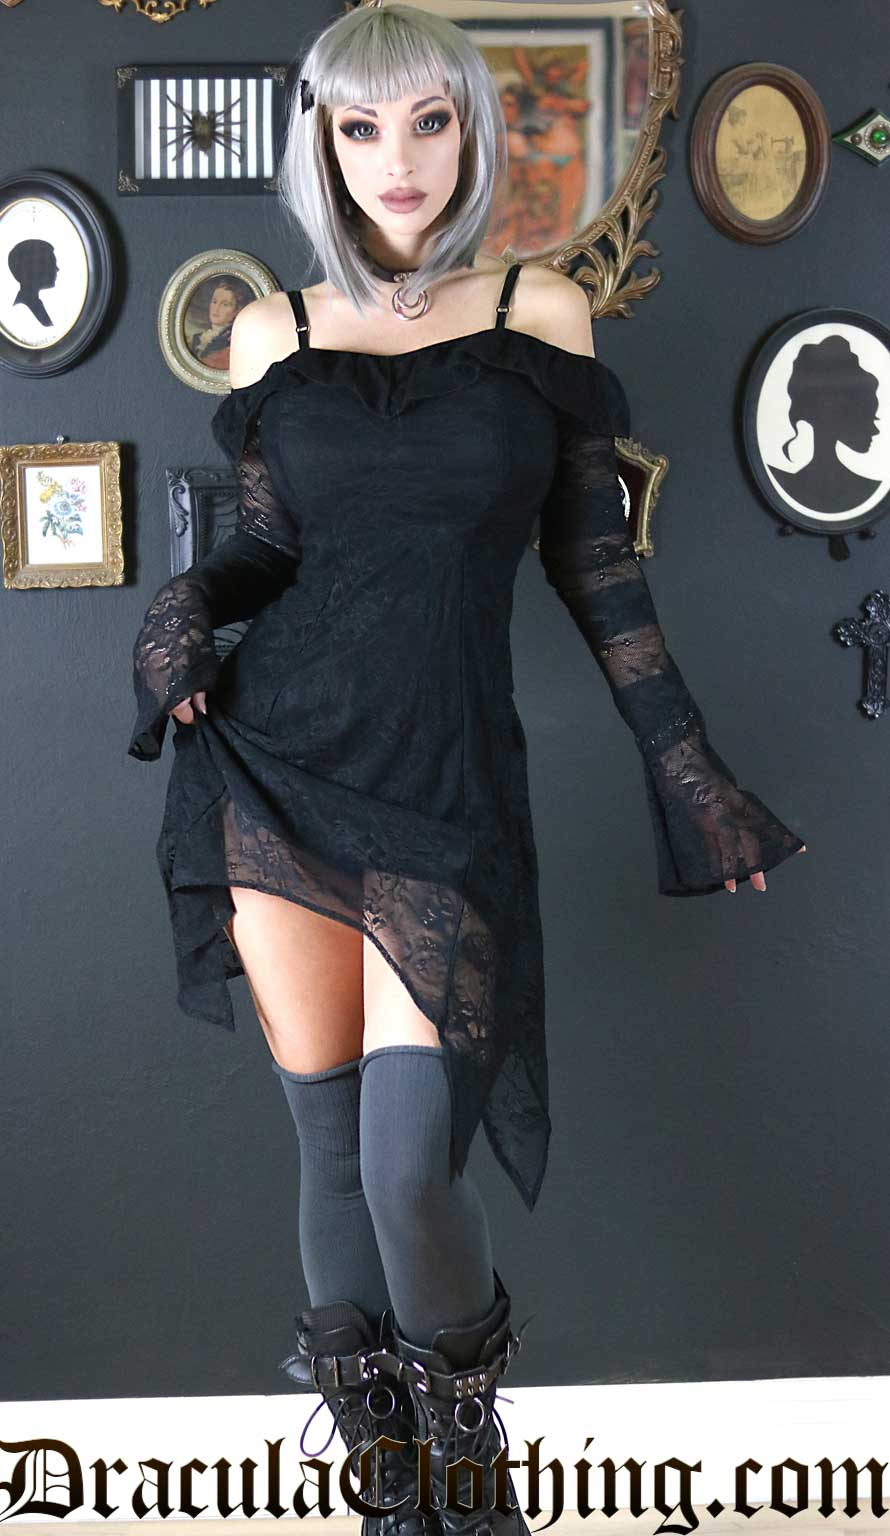 Dark Victorian Dress